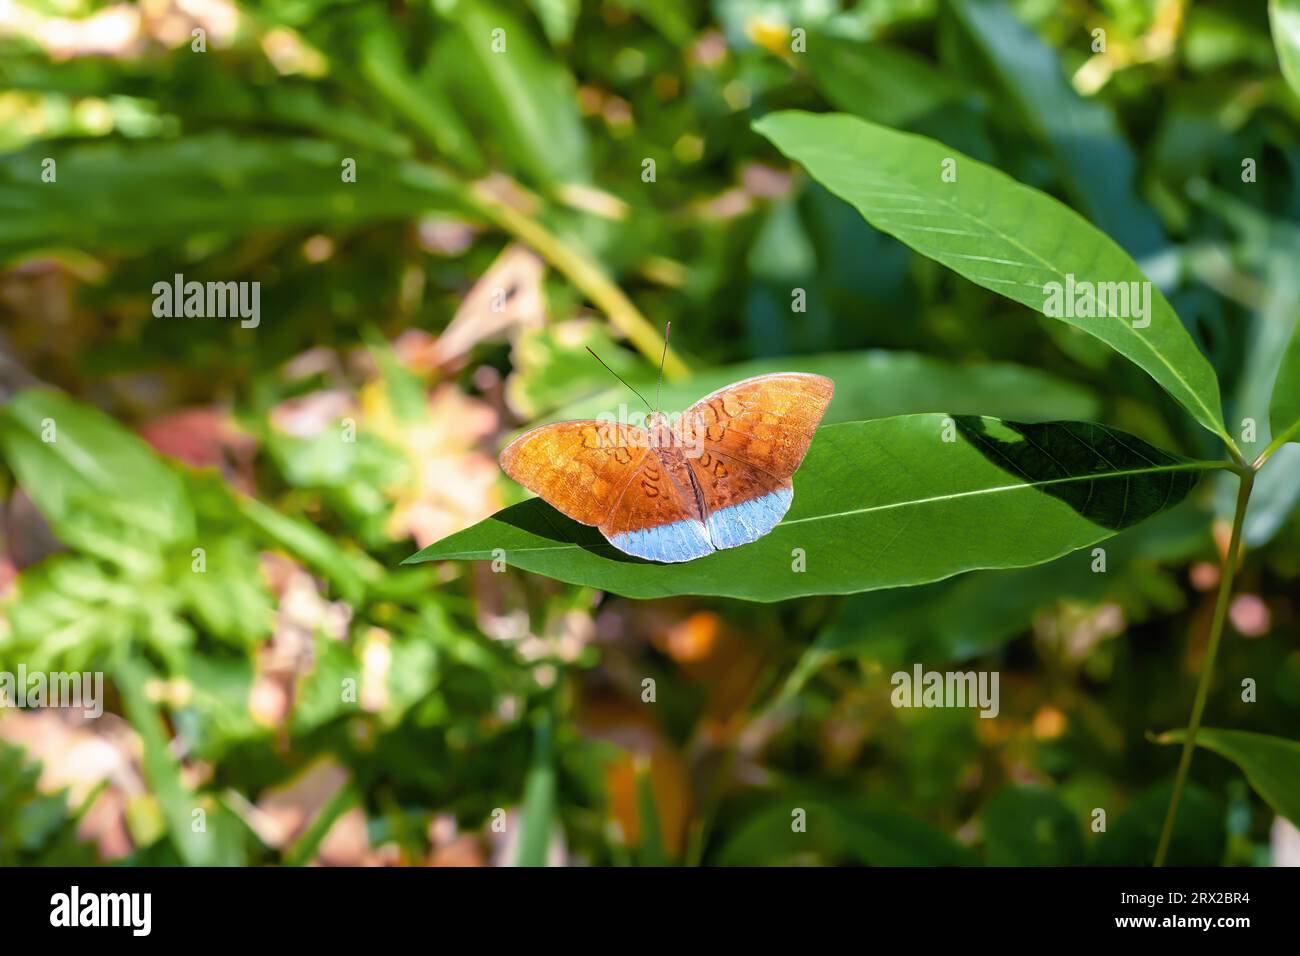 Farfalla tropicale earl che vola nella foresta pluviale. Il colorato insetto Tanaecia julii odilina seduto su foglie verdi nella giungla Foto Stock